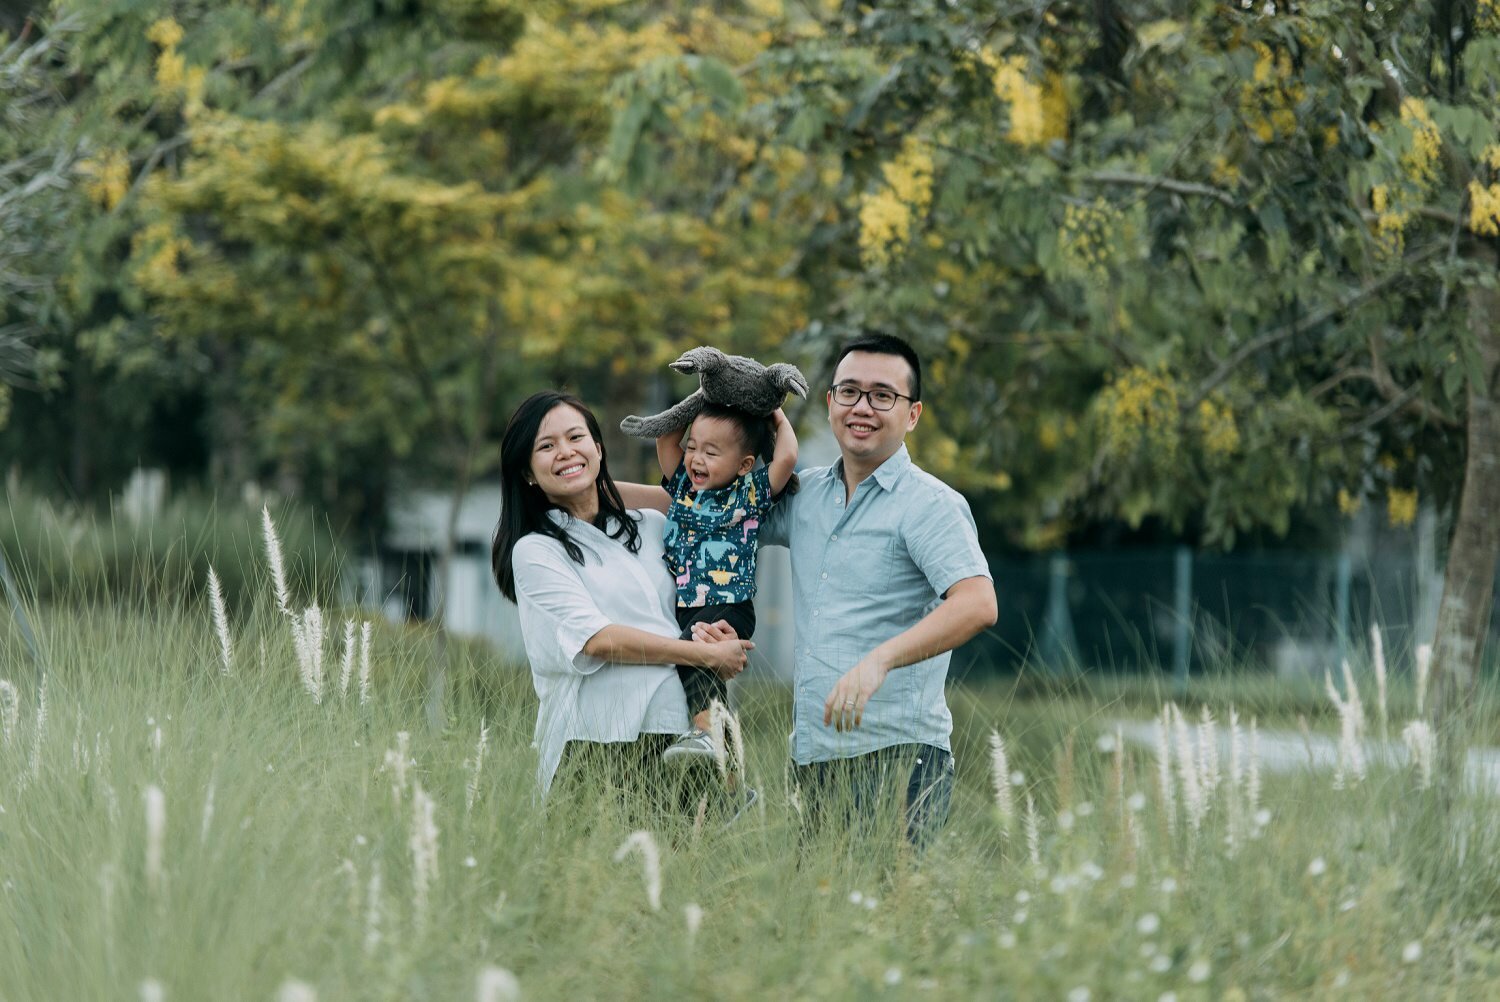 OVAL@Seletar Aerospace Park family photoshoot